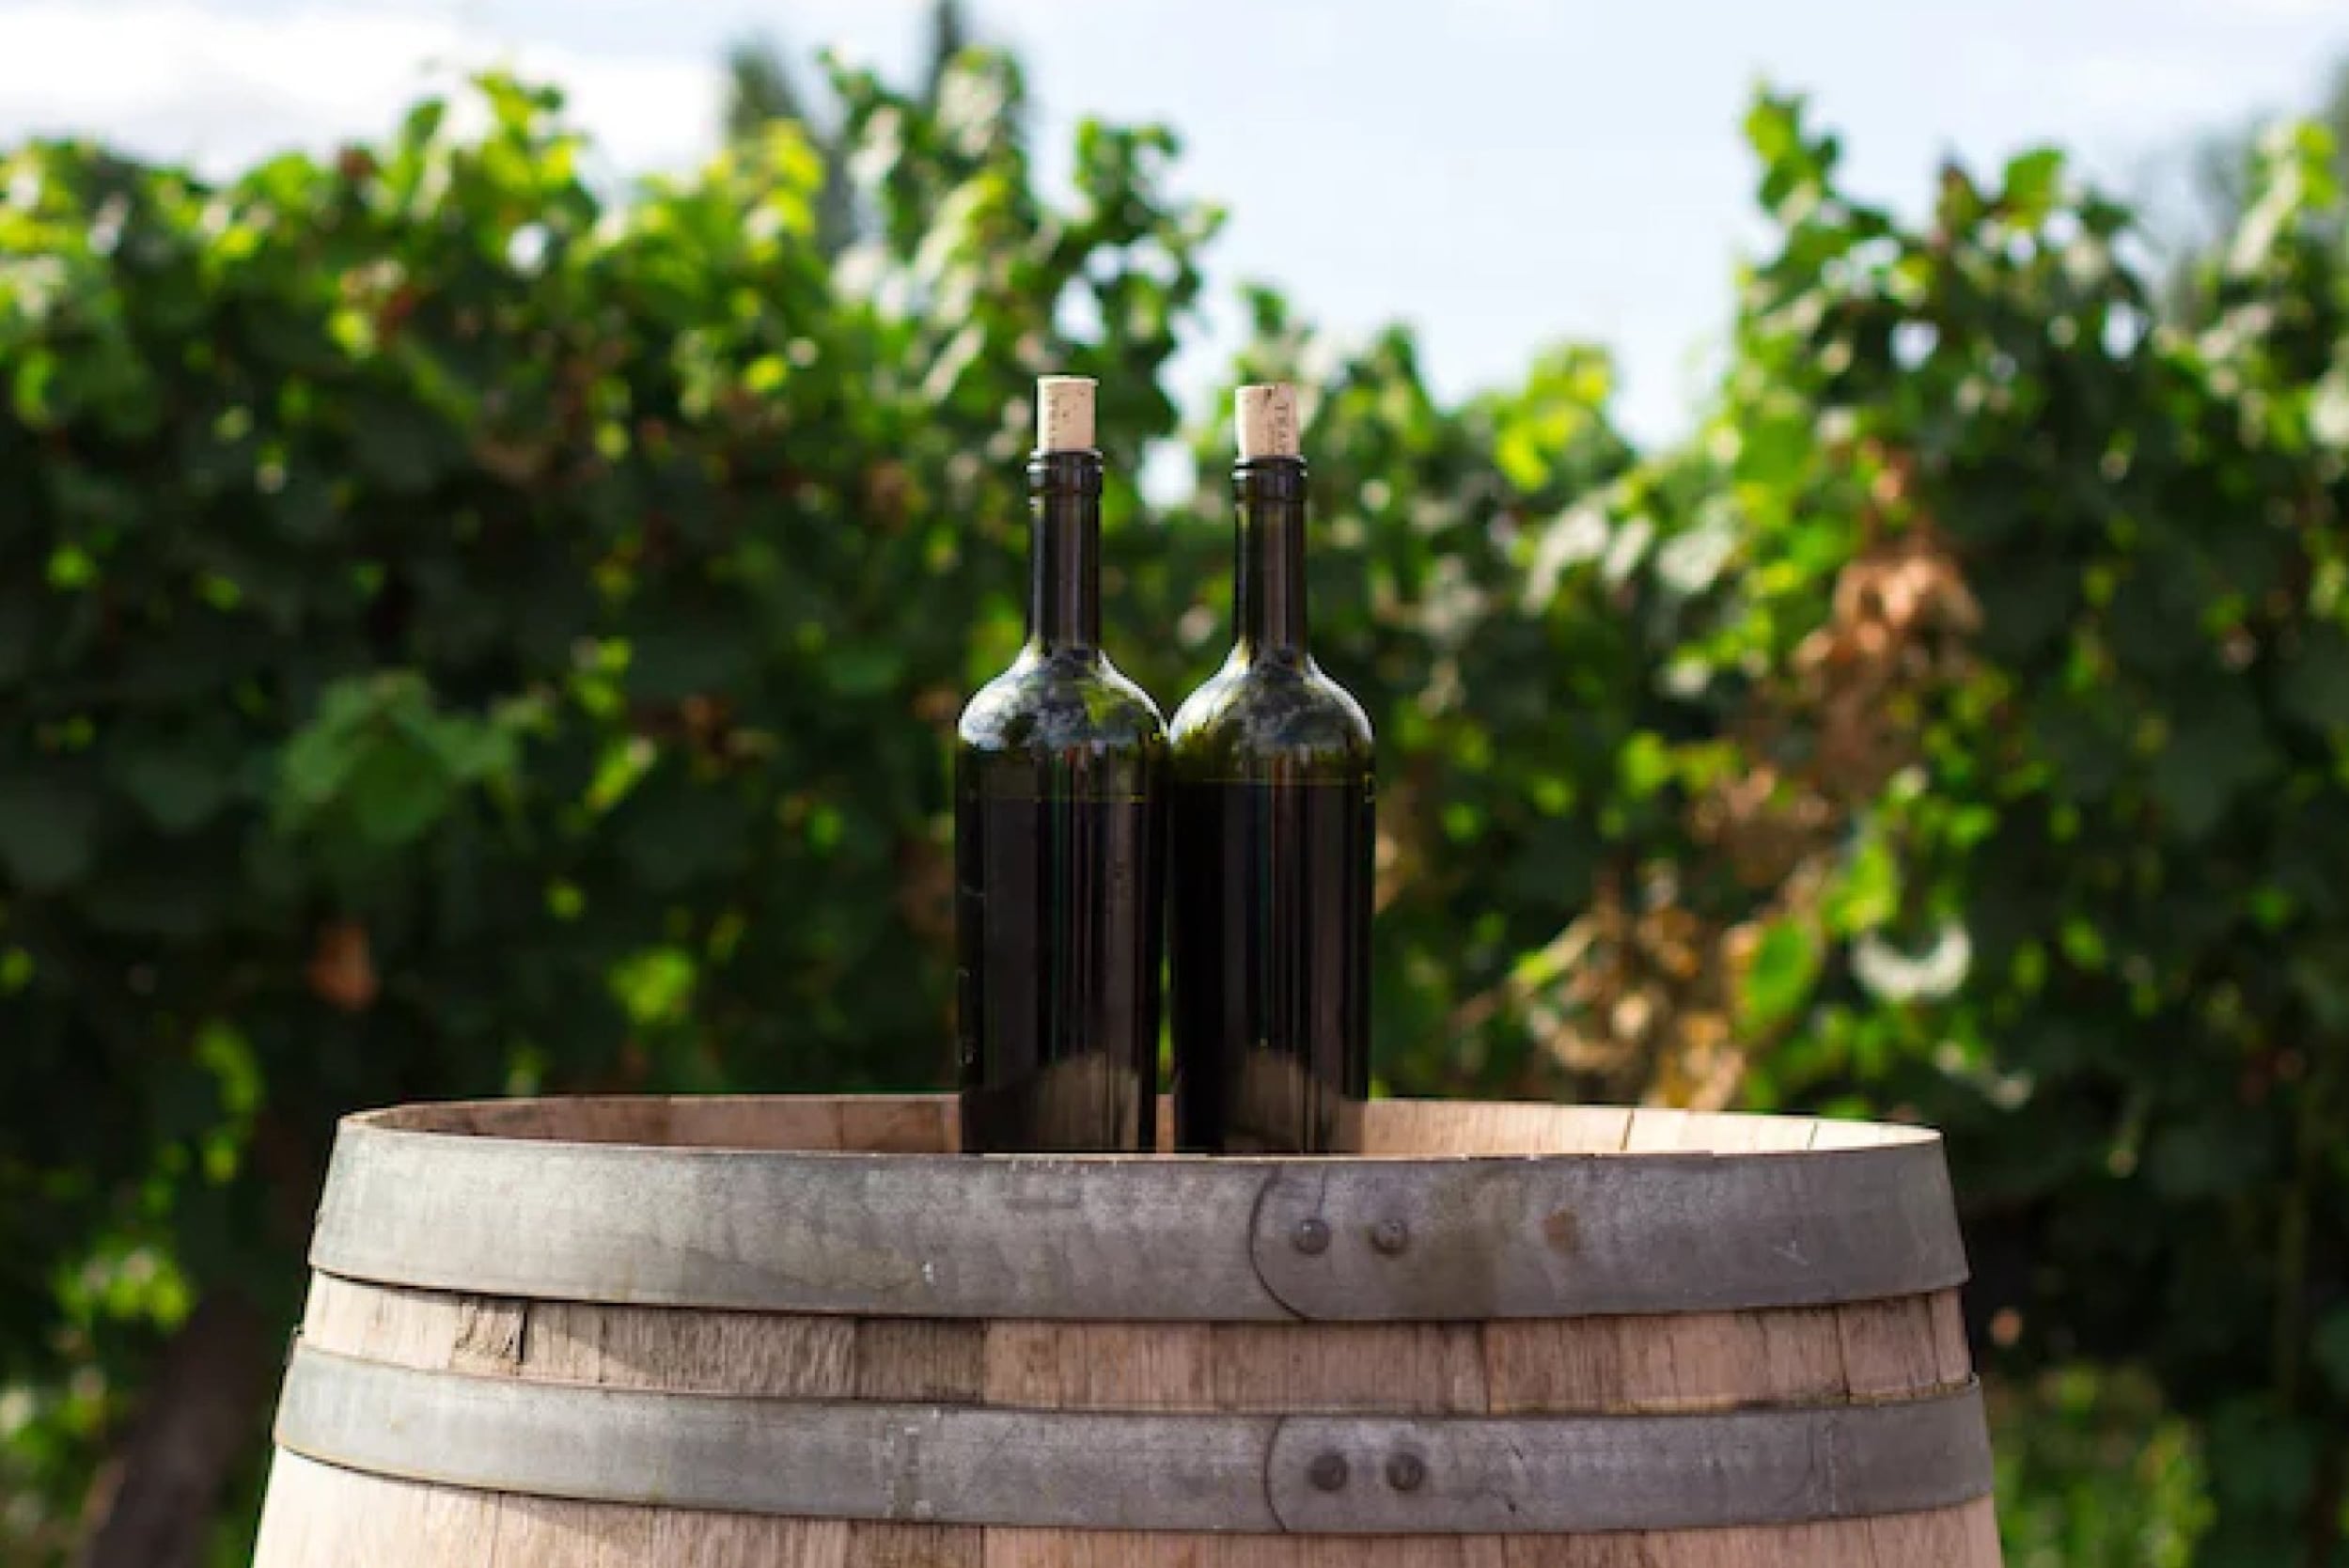 douro-valley-guide-wine-bottles-barrel-field-min